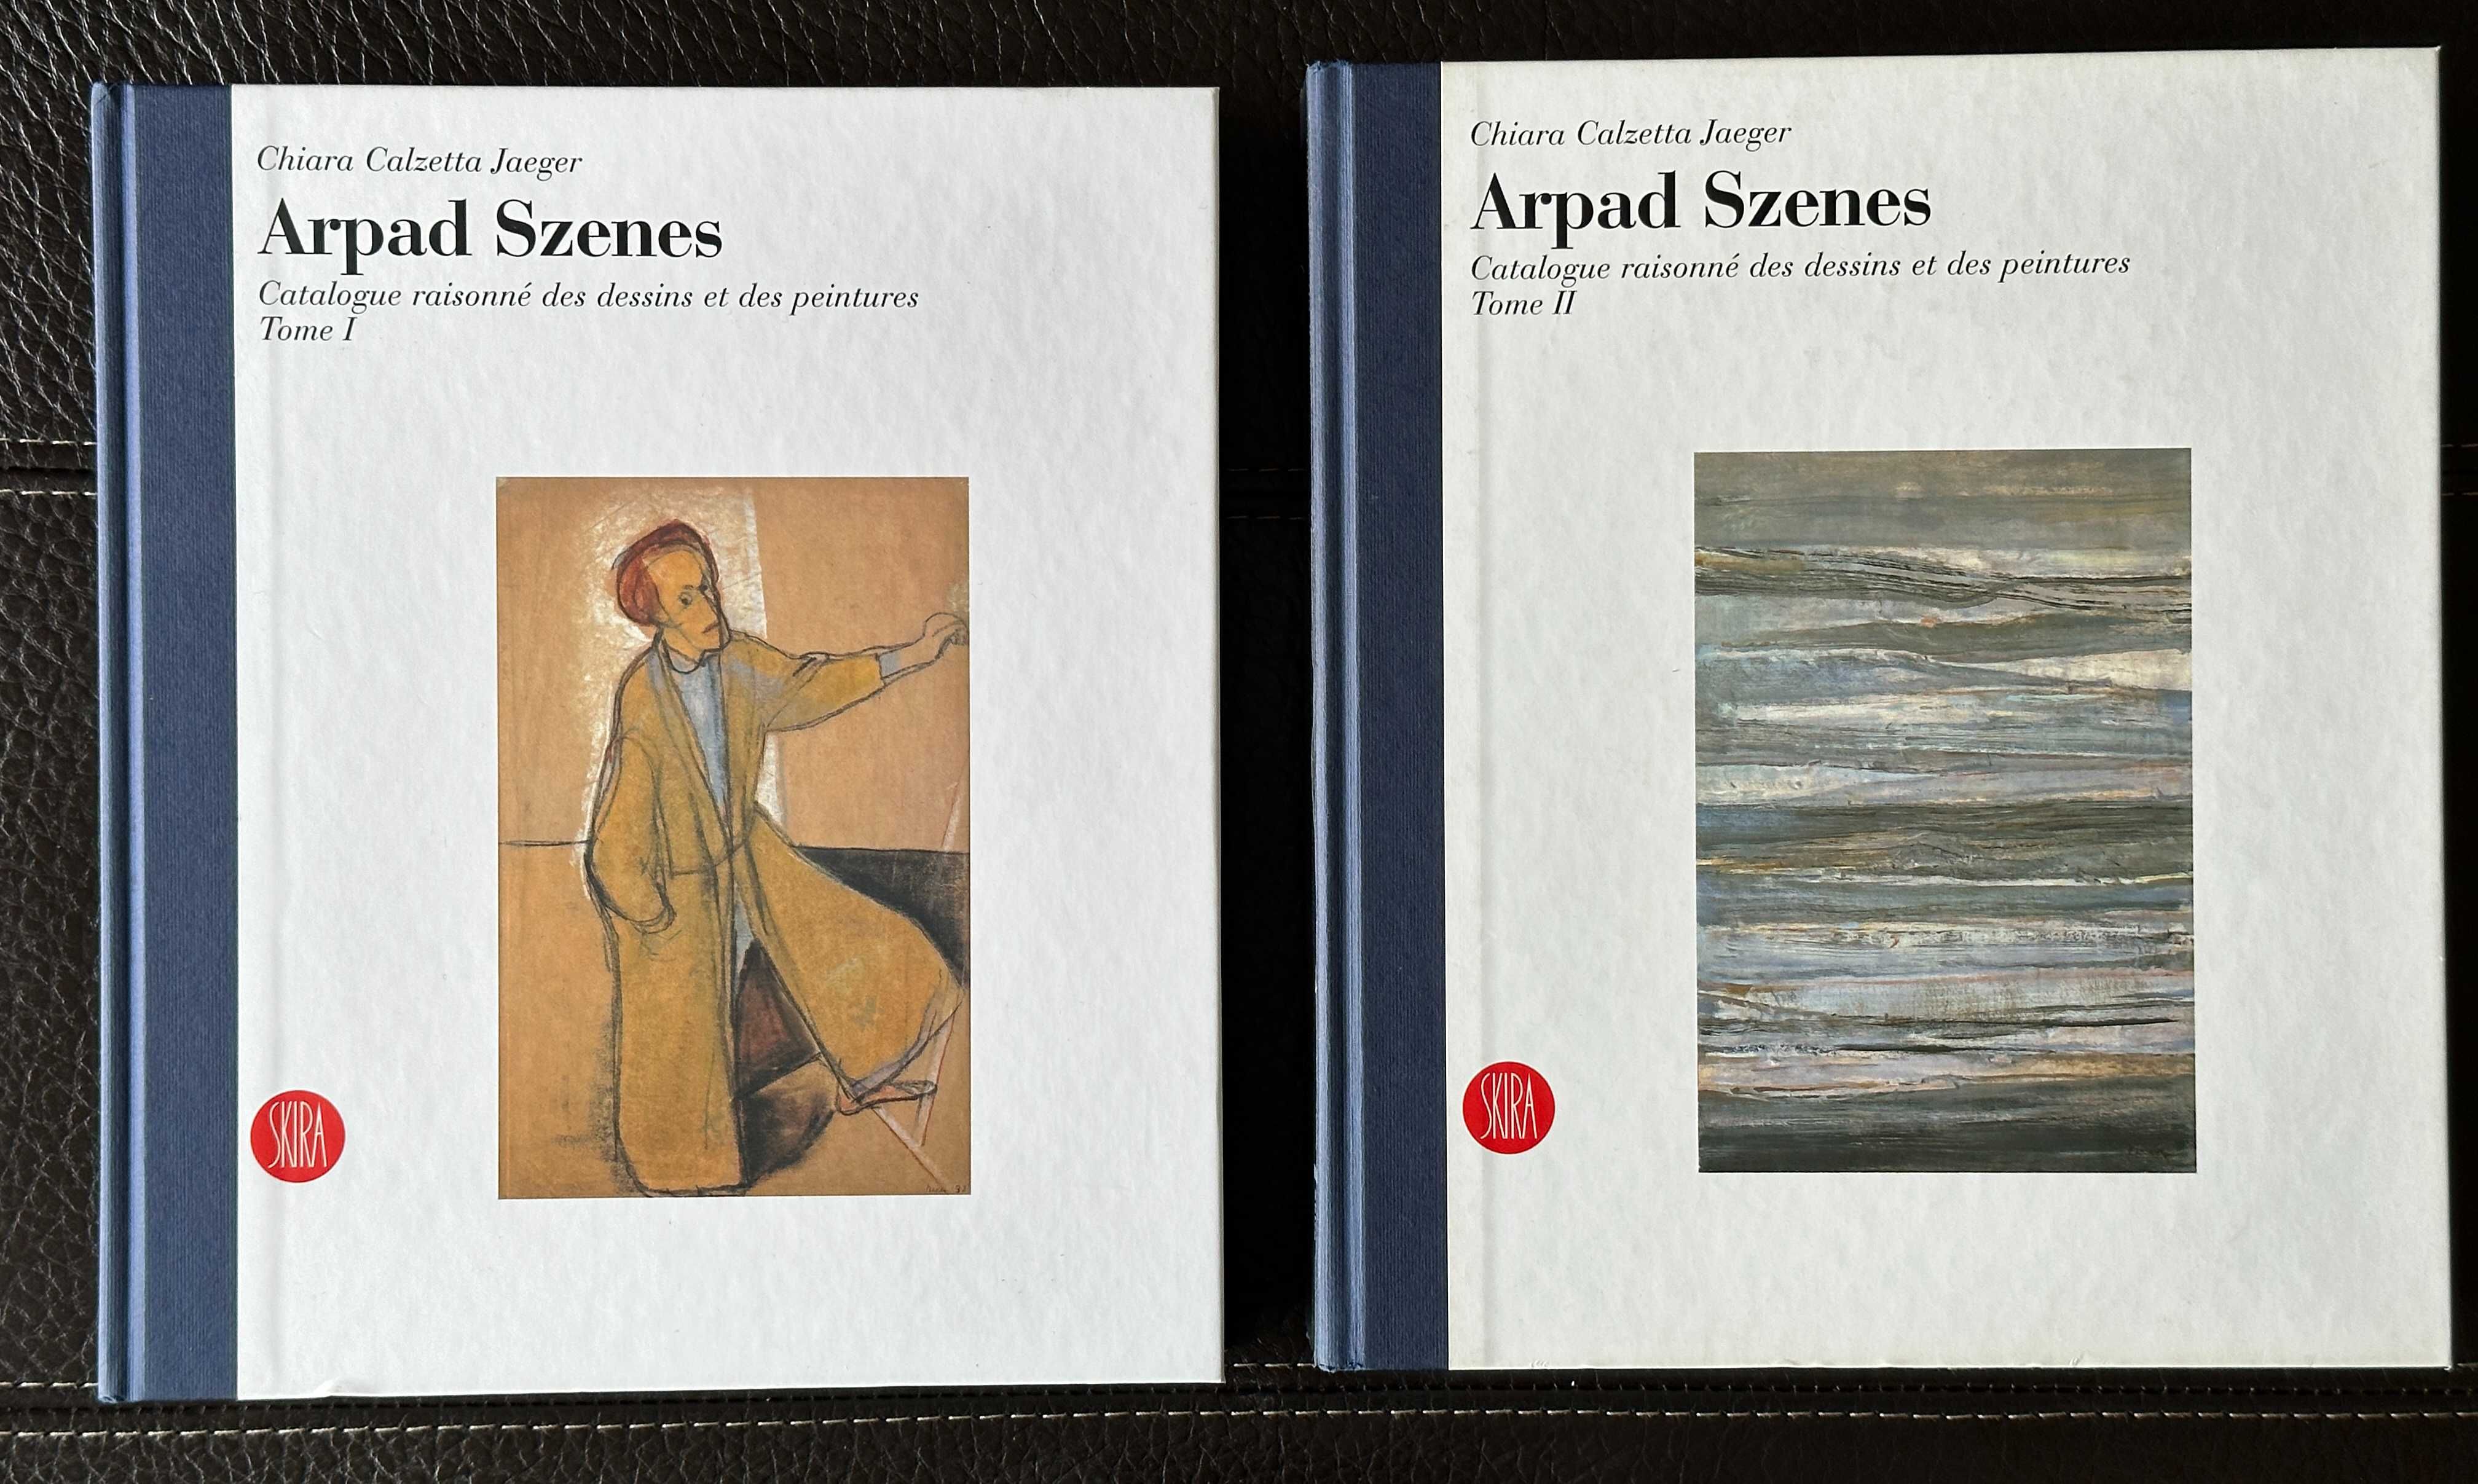 Arpad Szenes: Catalogue raisonné des dessins et des peintures